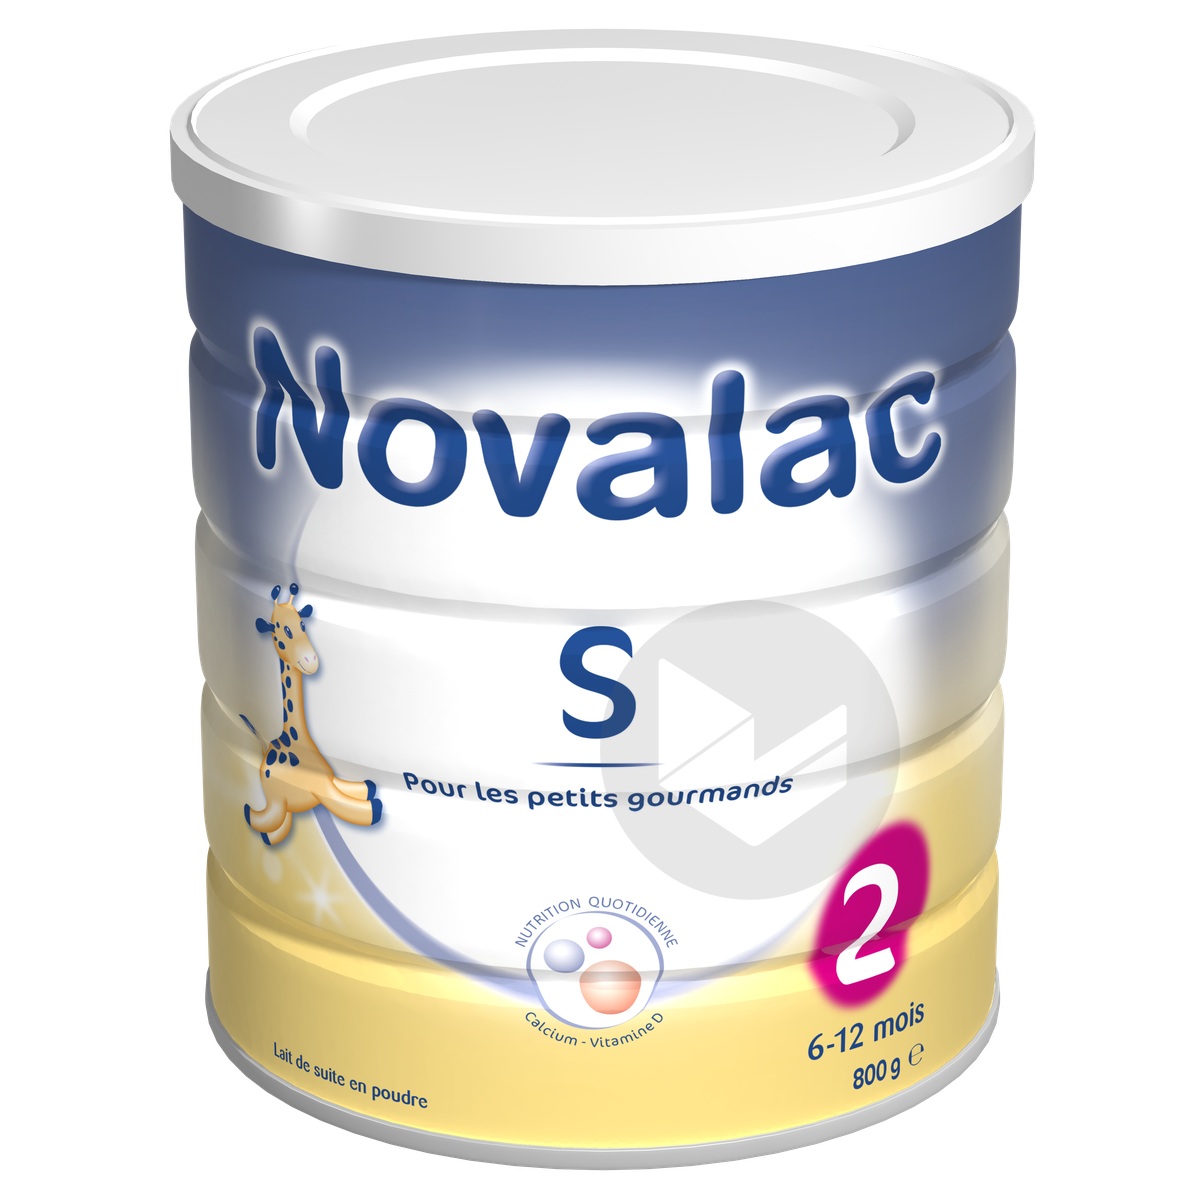 Novalac S2